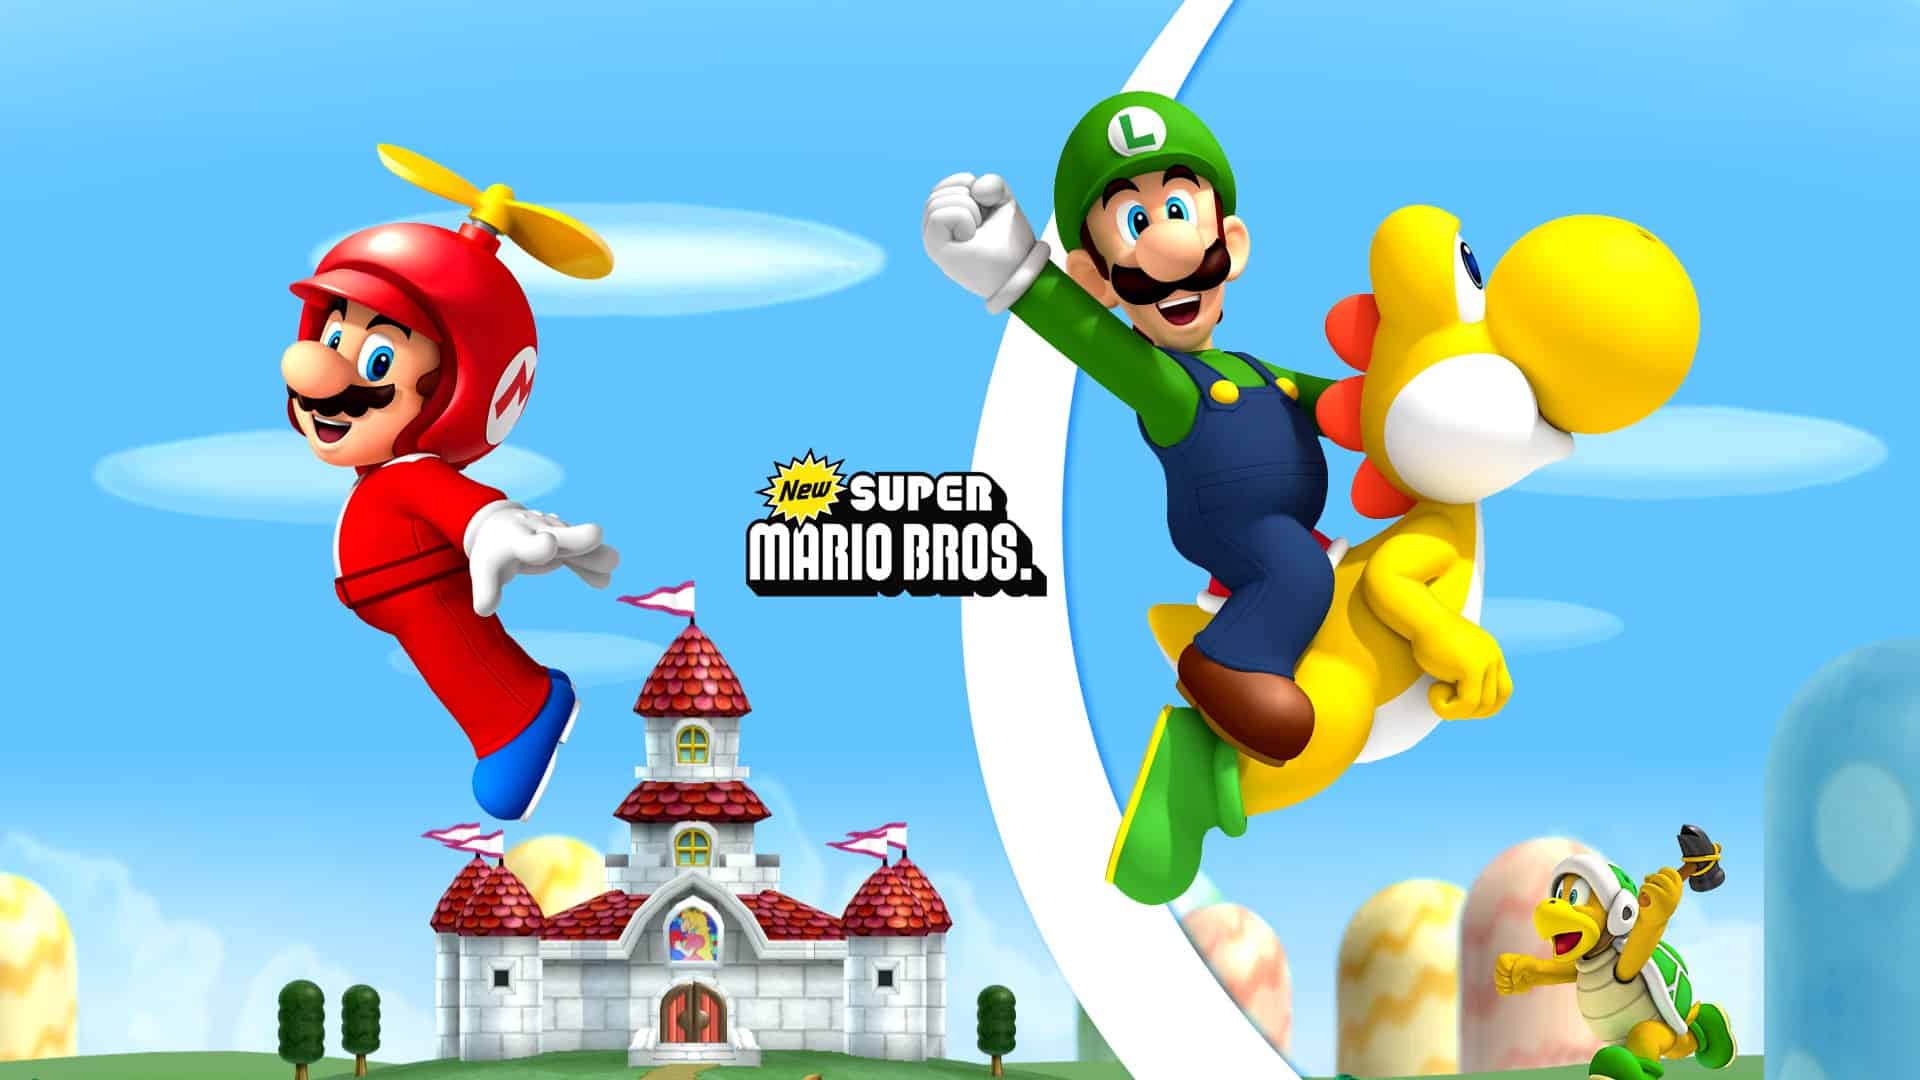 Best Super Mario Games - New Super Mario Bros